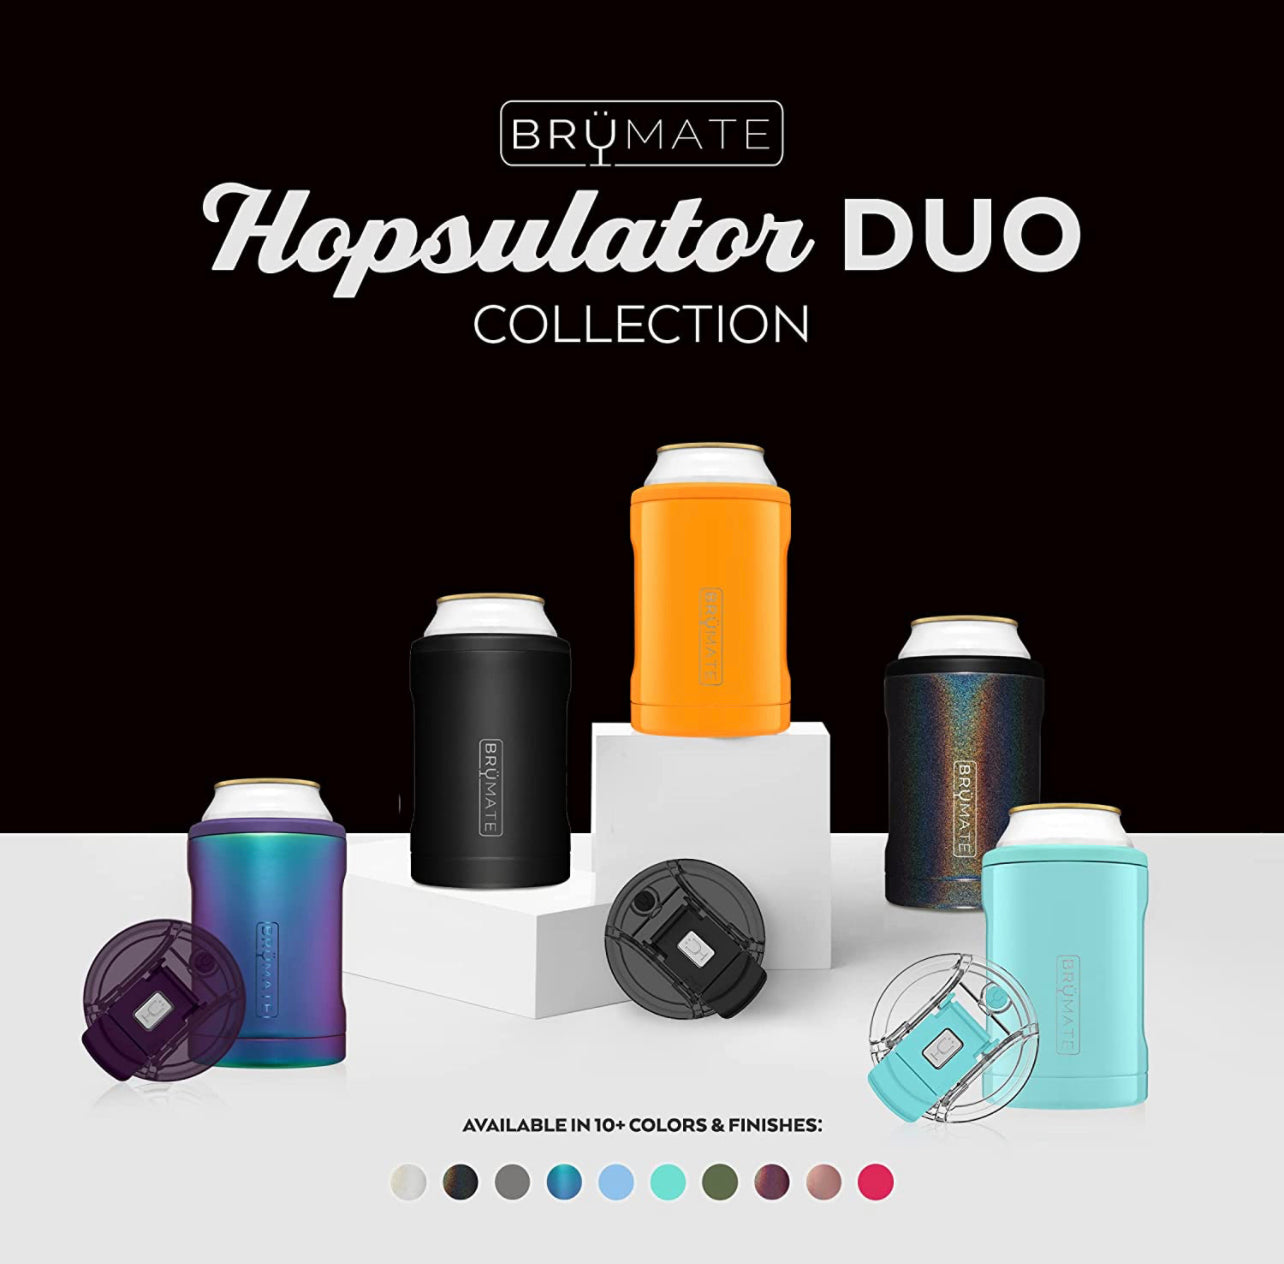 Brumate Hopsulator Duo 2-in-1 (12 oz Cans/Tumbler)